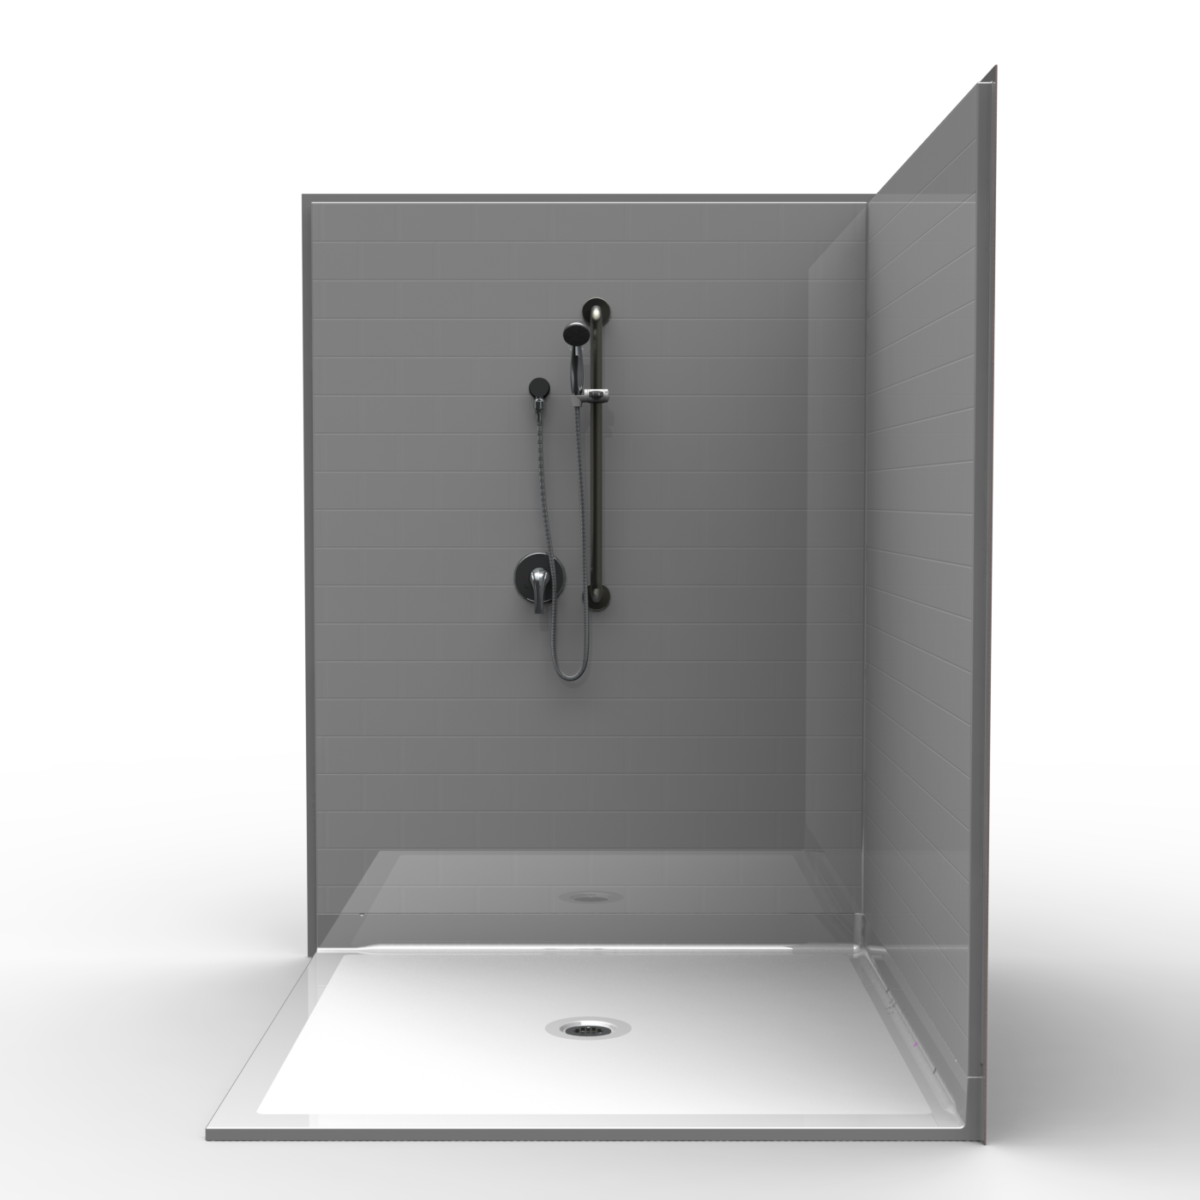 3LBSC6060FB1B, Three Piece 60” x 60” Corner Roll in Shower, 1” Threshold, Centre Drain, Flat back wall